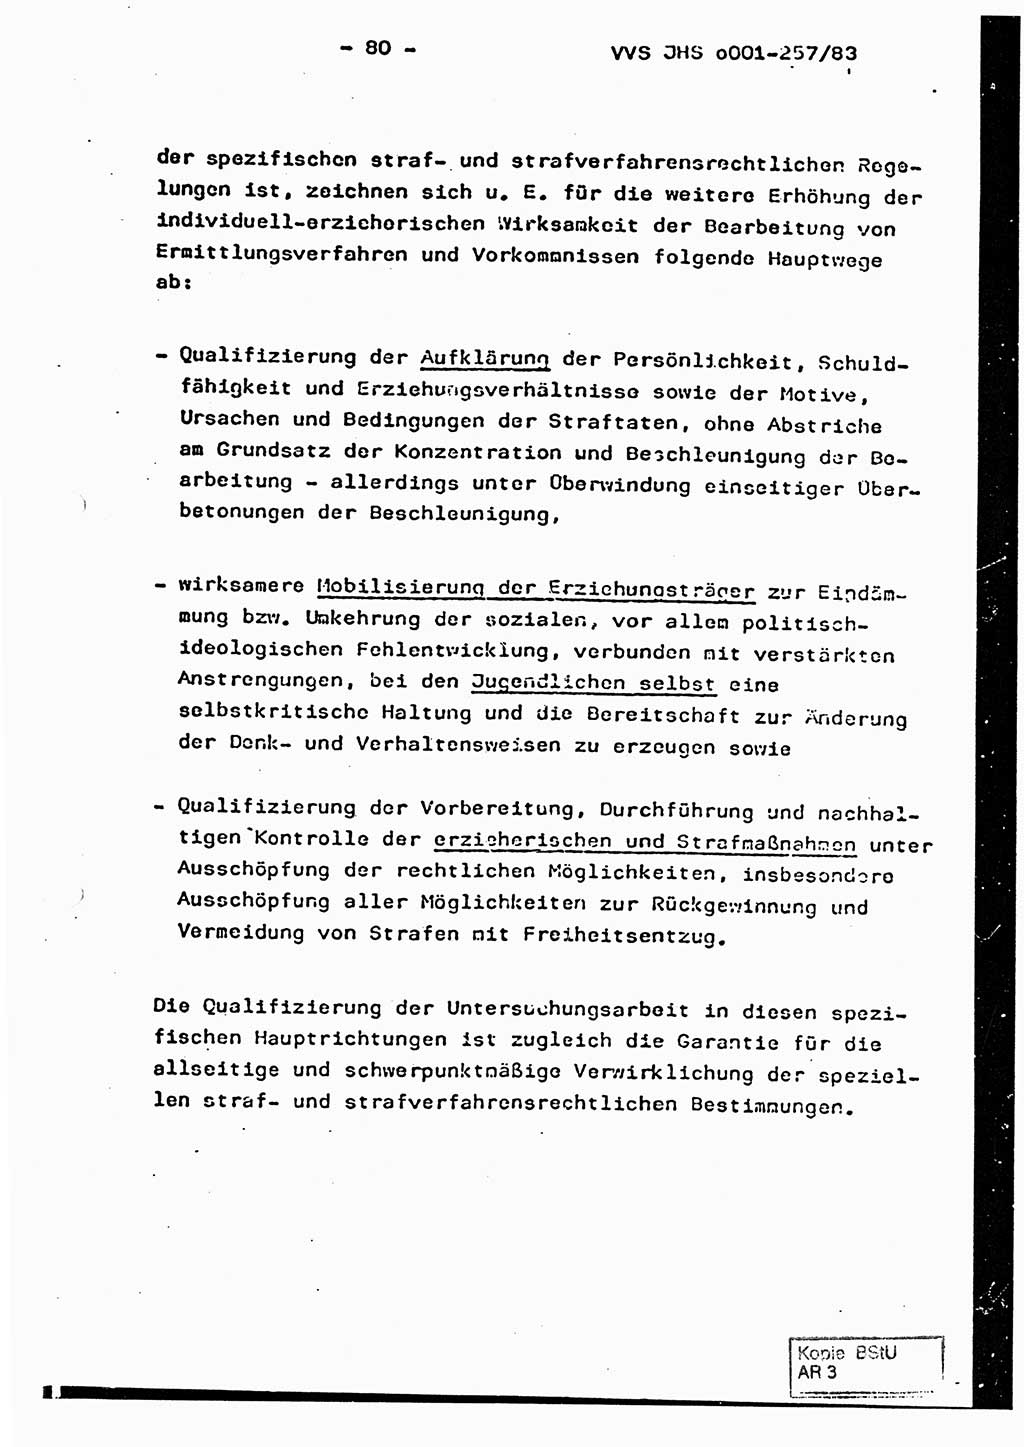 Dissertation, Oberst Helmut Lubas (BV Mdg.), Oberstleutnant Manfred Eschberger (HA IX), Oberleutnant Hans-Jürgen Ludwig (JHS), Ministerium für Staatssicherheit (MfS) [Deutsche Demokratische Republik (DDR)], Juristische Hochschule (JHS), Vertrauliche Verschlußsache (VVS) o001-257/83, Potsdam 1983, Seite 80 (Diss. MfS DDR JHS VVS o001-257/83 1983, S. 80)